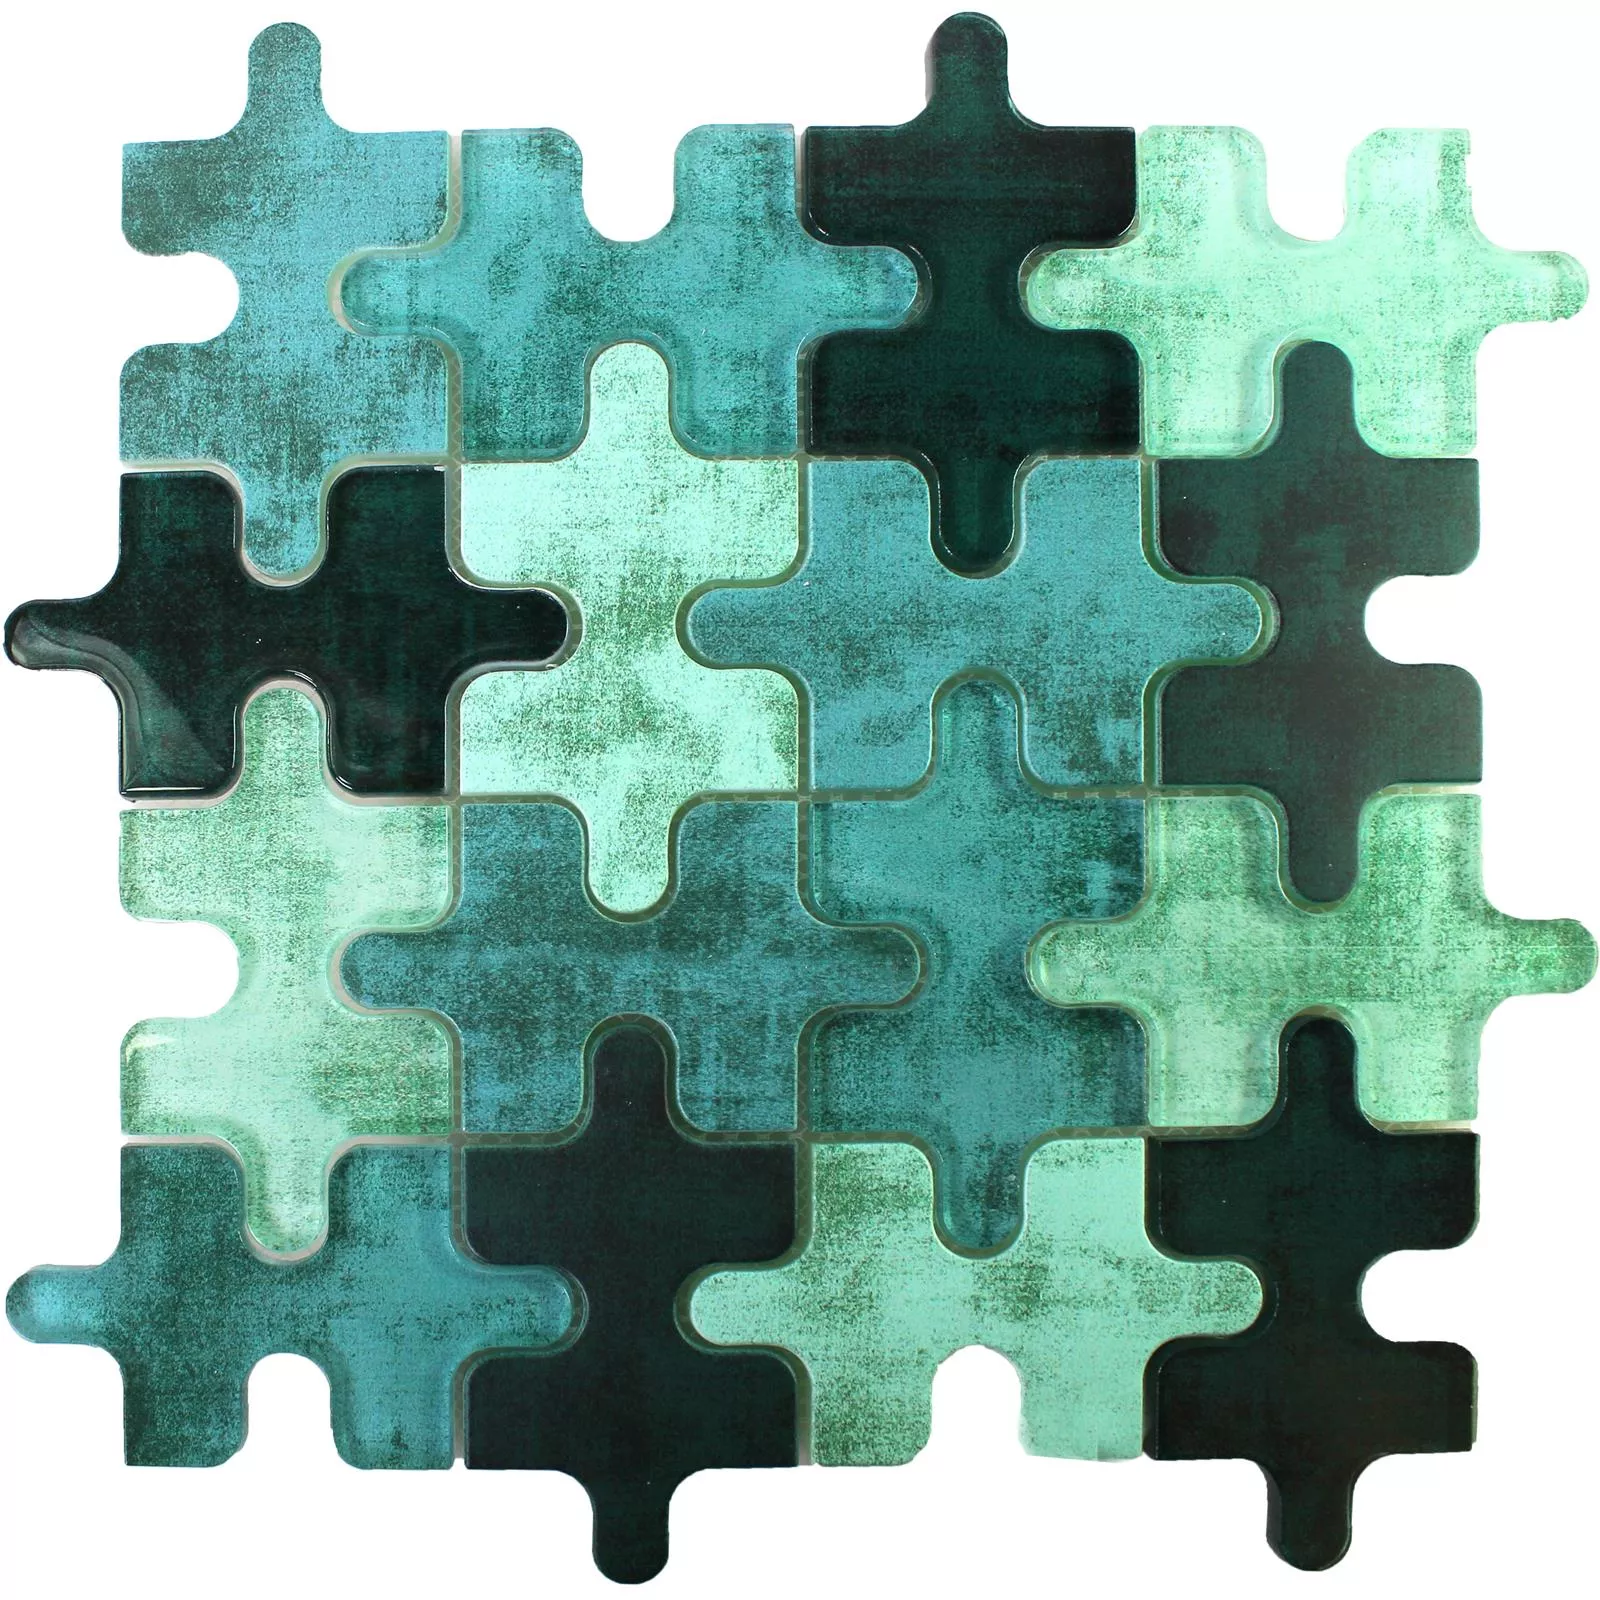 Muestra Mosaico De Cristal Azulejos Puzzle Verde